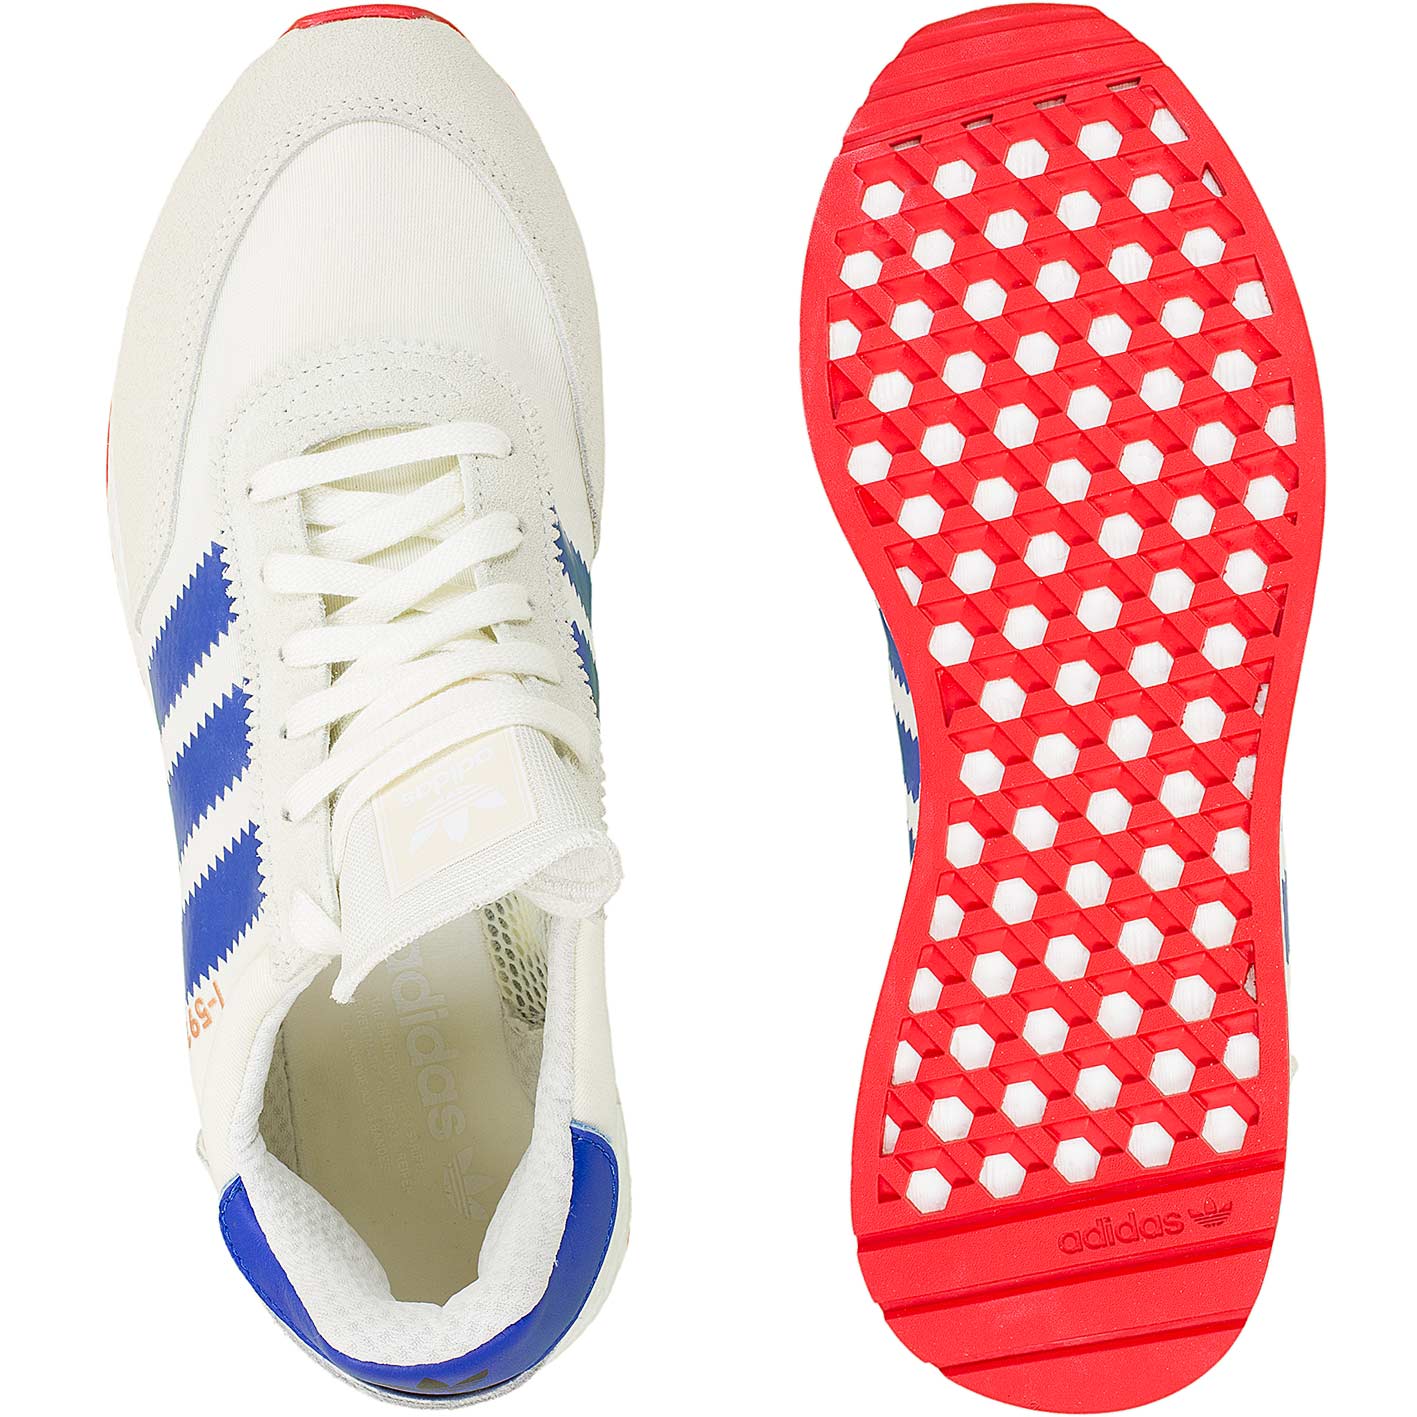 ☆ Adidas Originals Sneaker I-5923 weiß/blau/rot - hier bestellen!